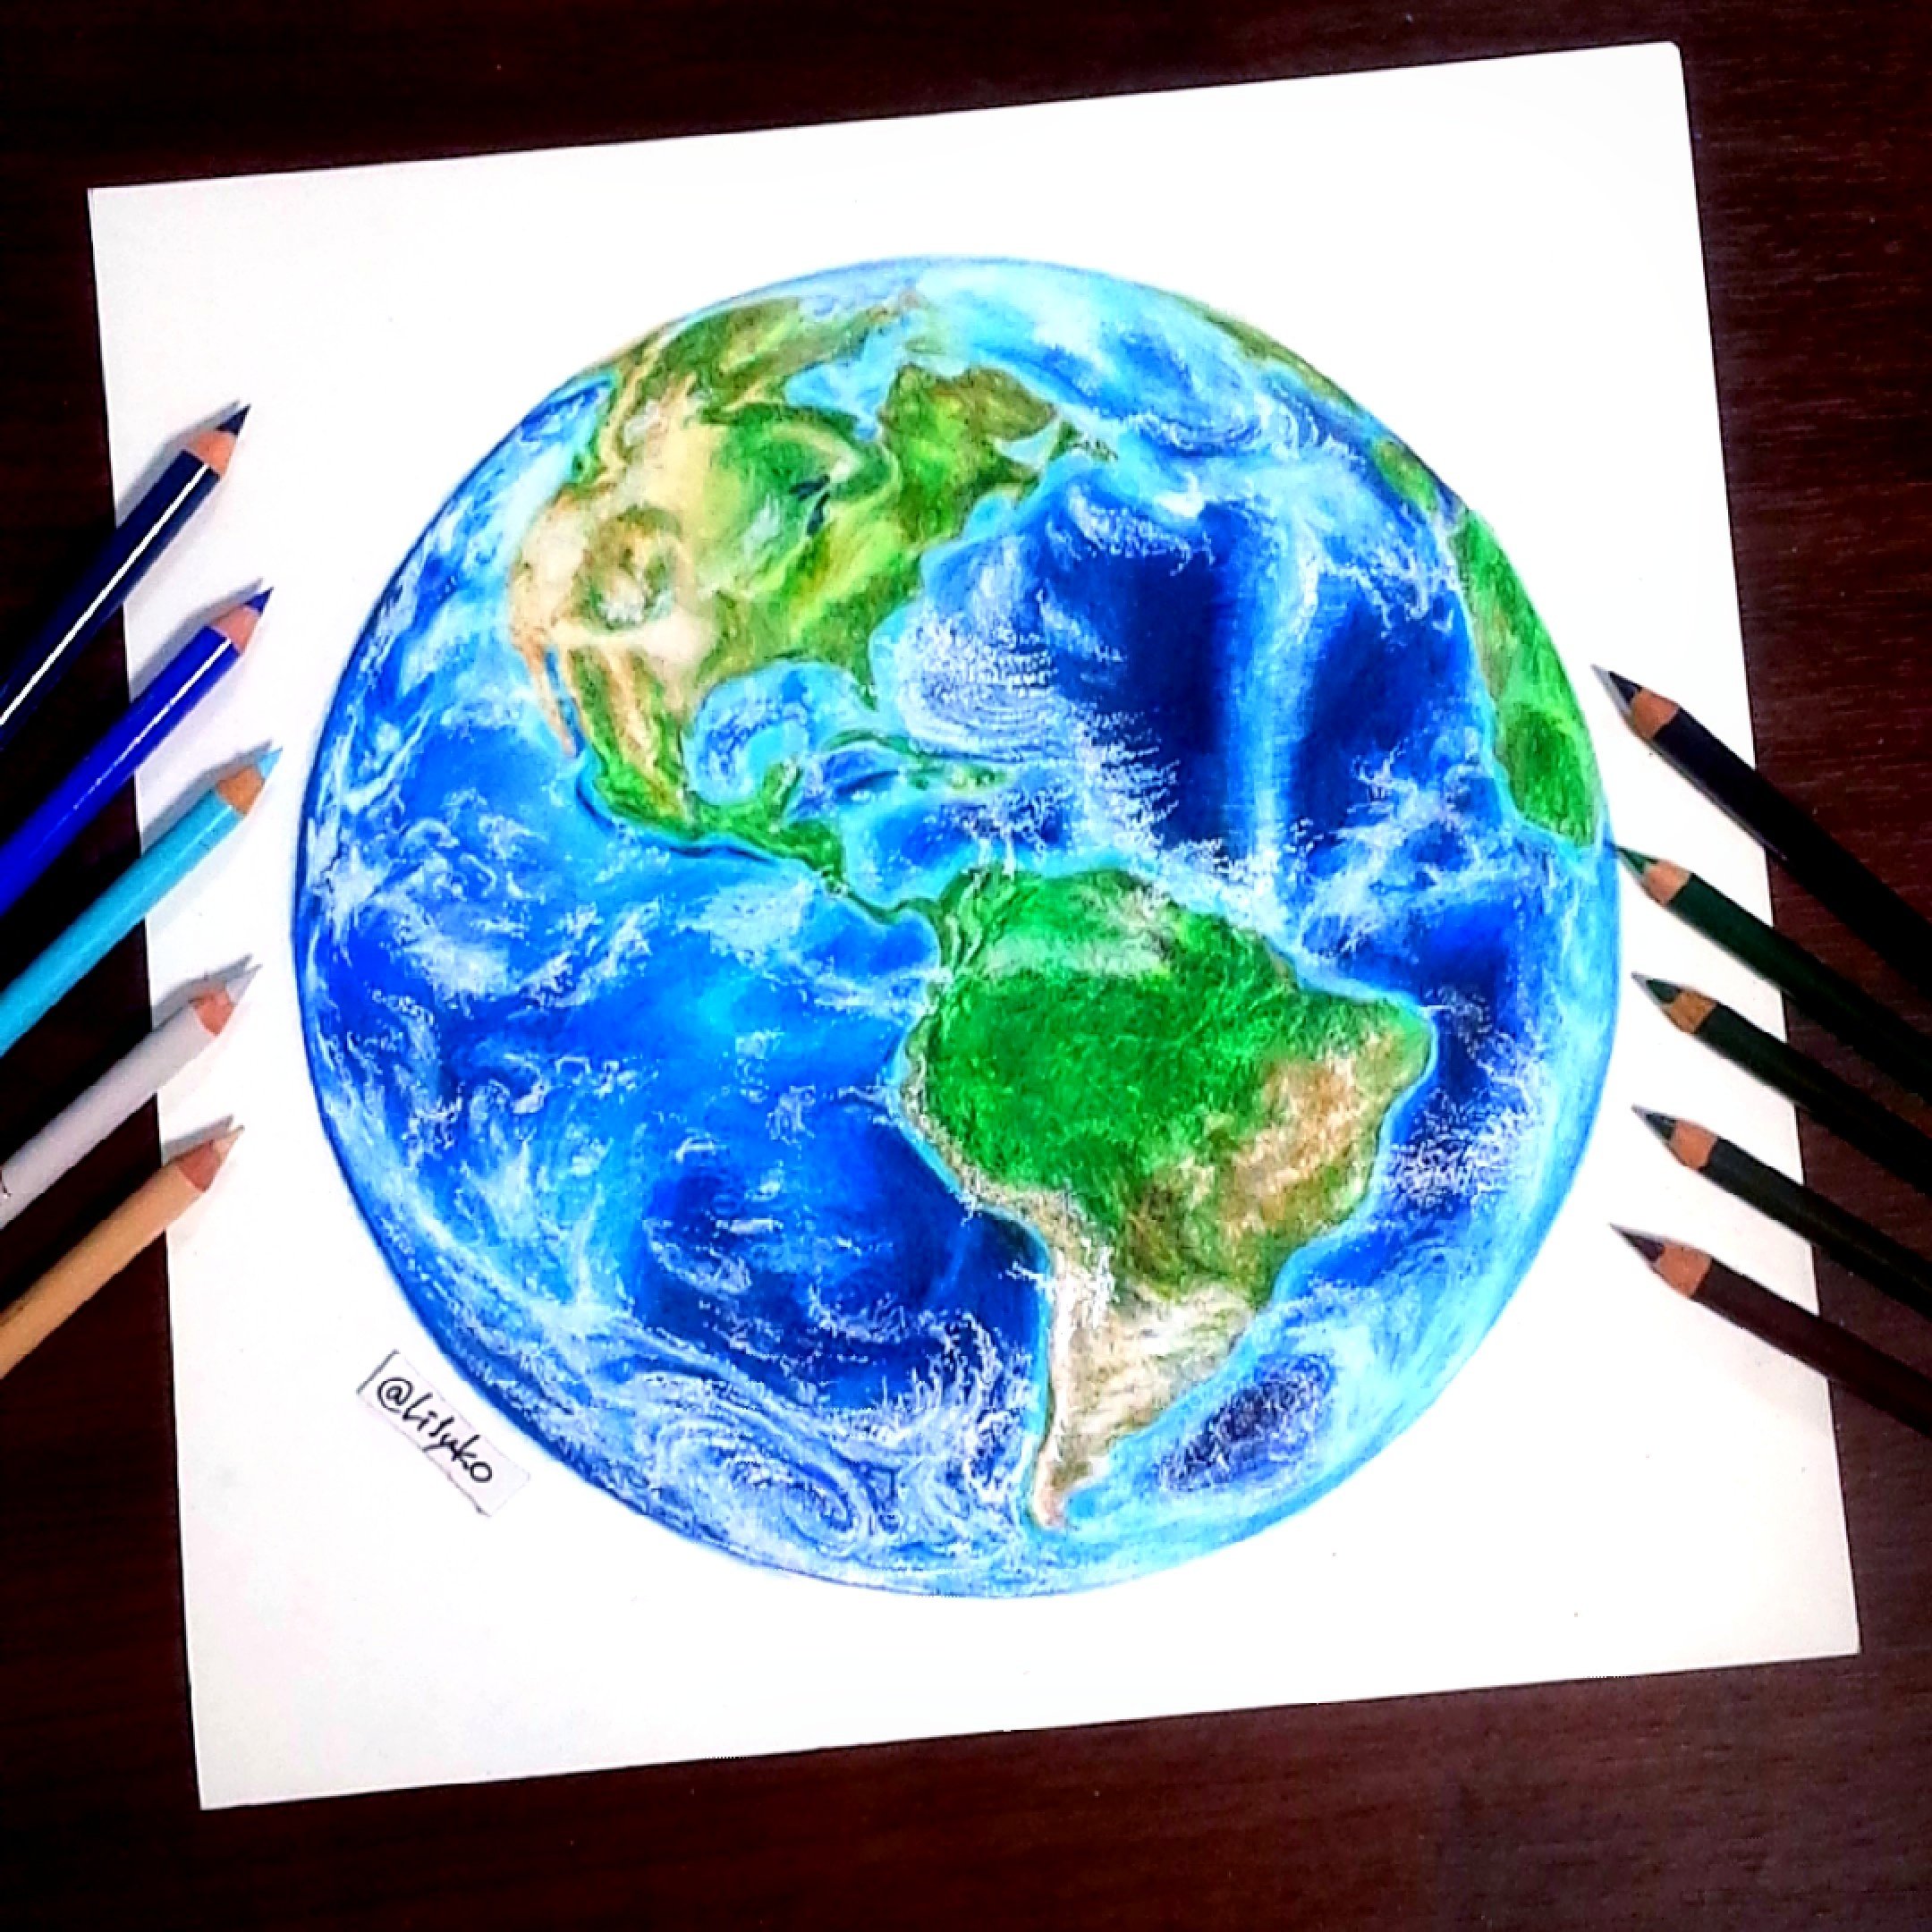 Twitter 上的 りりぃさん てとら 色鉛筆画 美しい地球を描きたくて 描いたはいいけど載せるの忘れてて 今頃w 大陸は割と細かく描き込んだけど見事に潰れた 綺麗なﾌﾞﾙｰが出せて良かった 地球万歳 色鉛筆 地球 Drawing Earth T Co J9xz8bqgmh